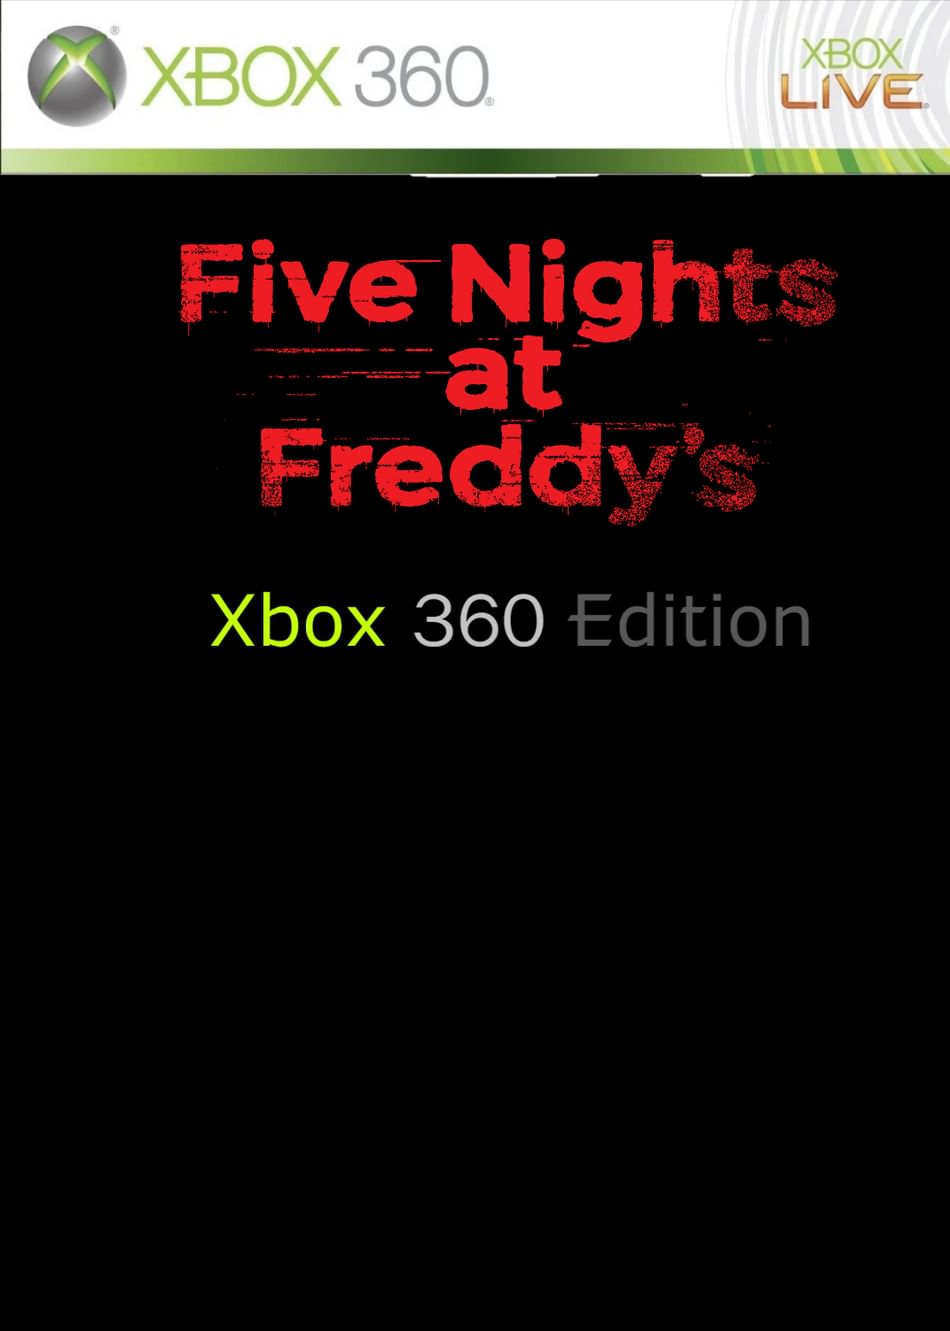 Tive nights at freddy s jogo xbox 360 pontofrio